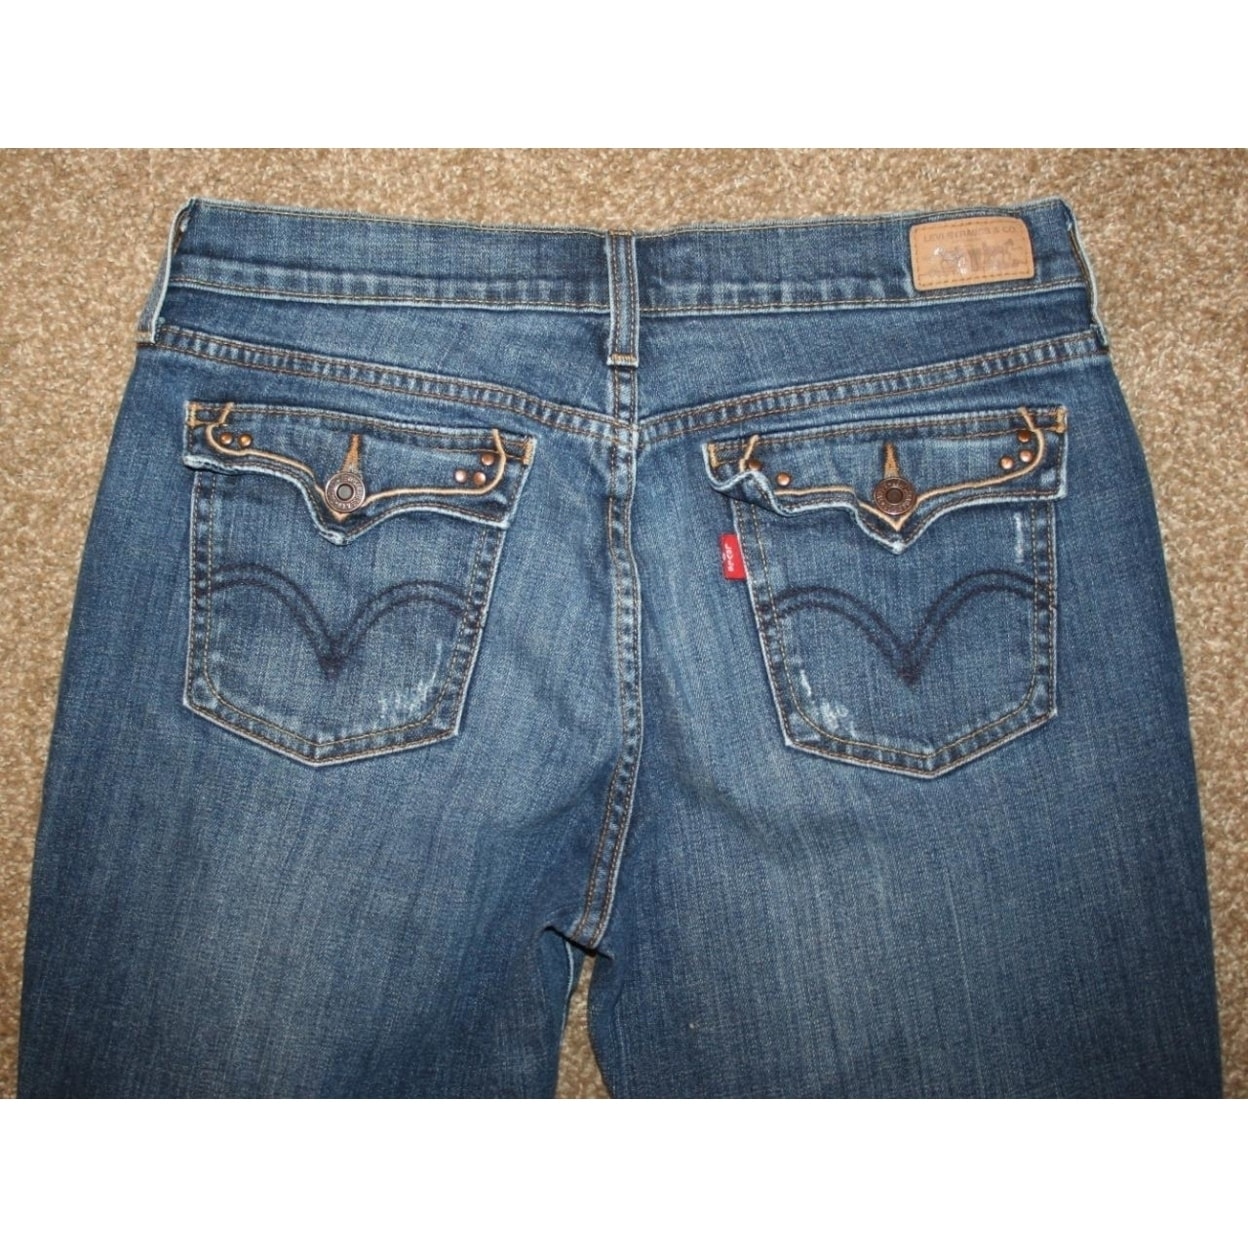 30 short jeans